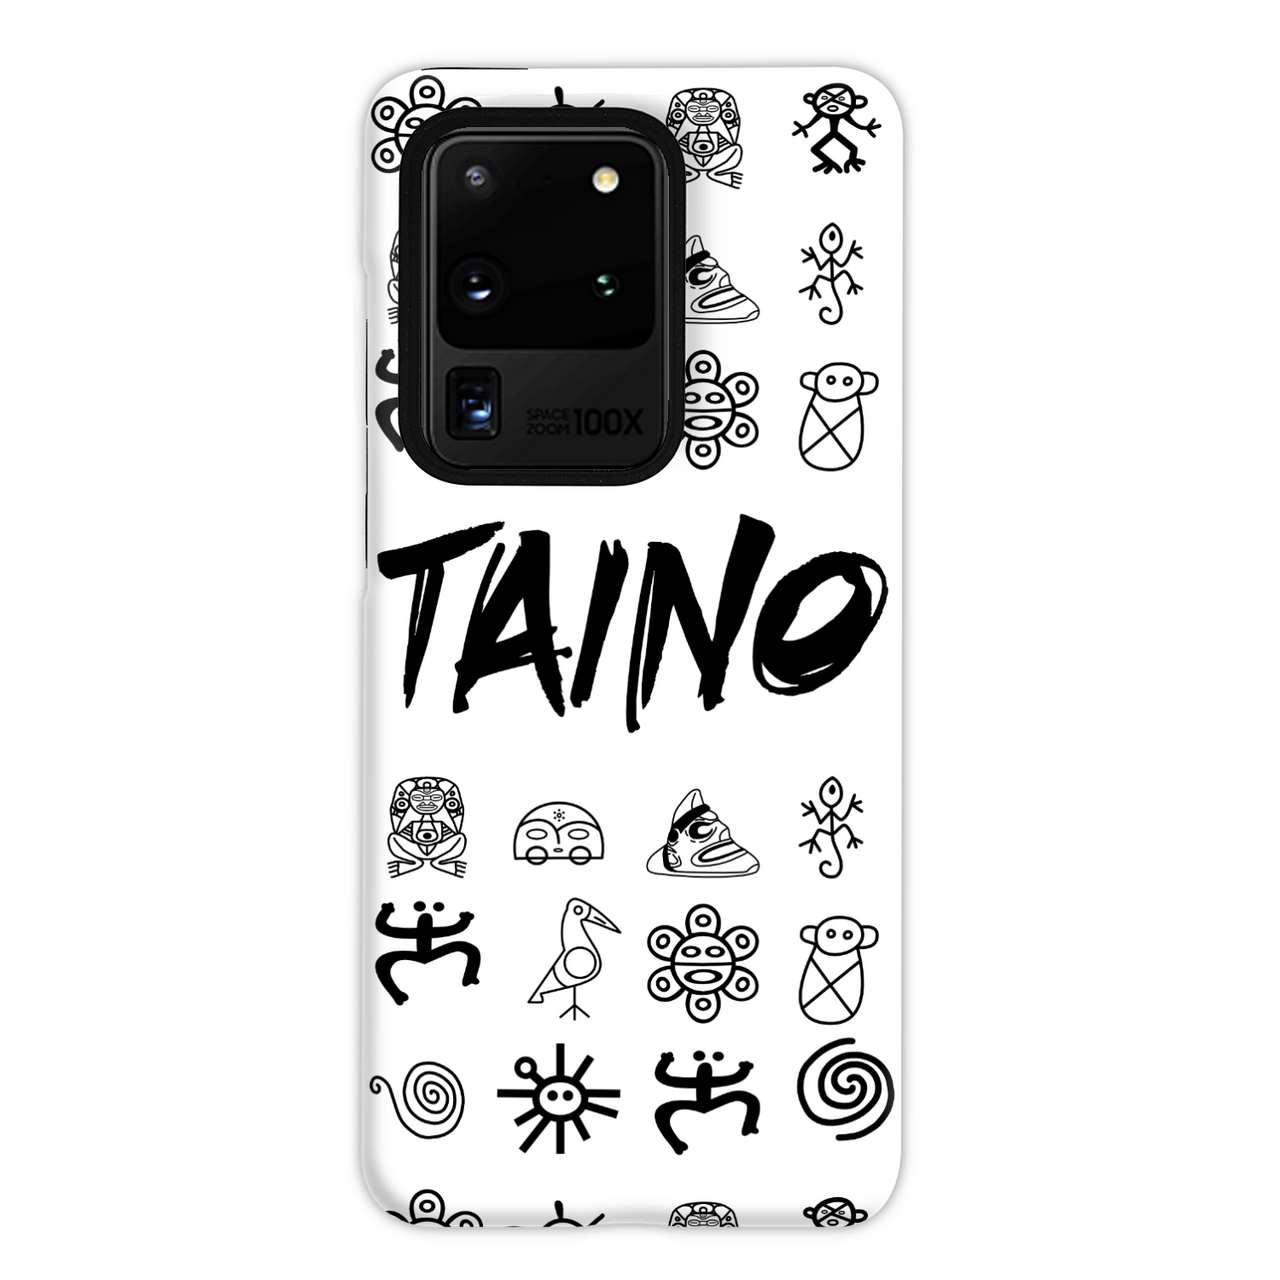 TAINO SYMBOLS PHONE CASE